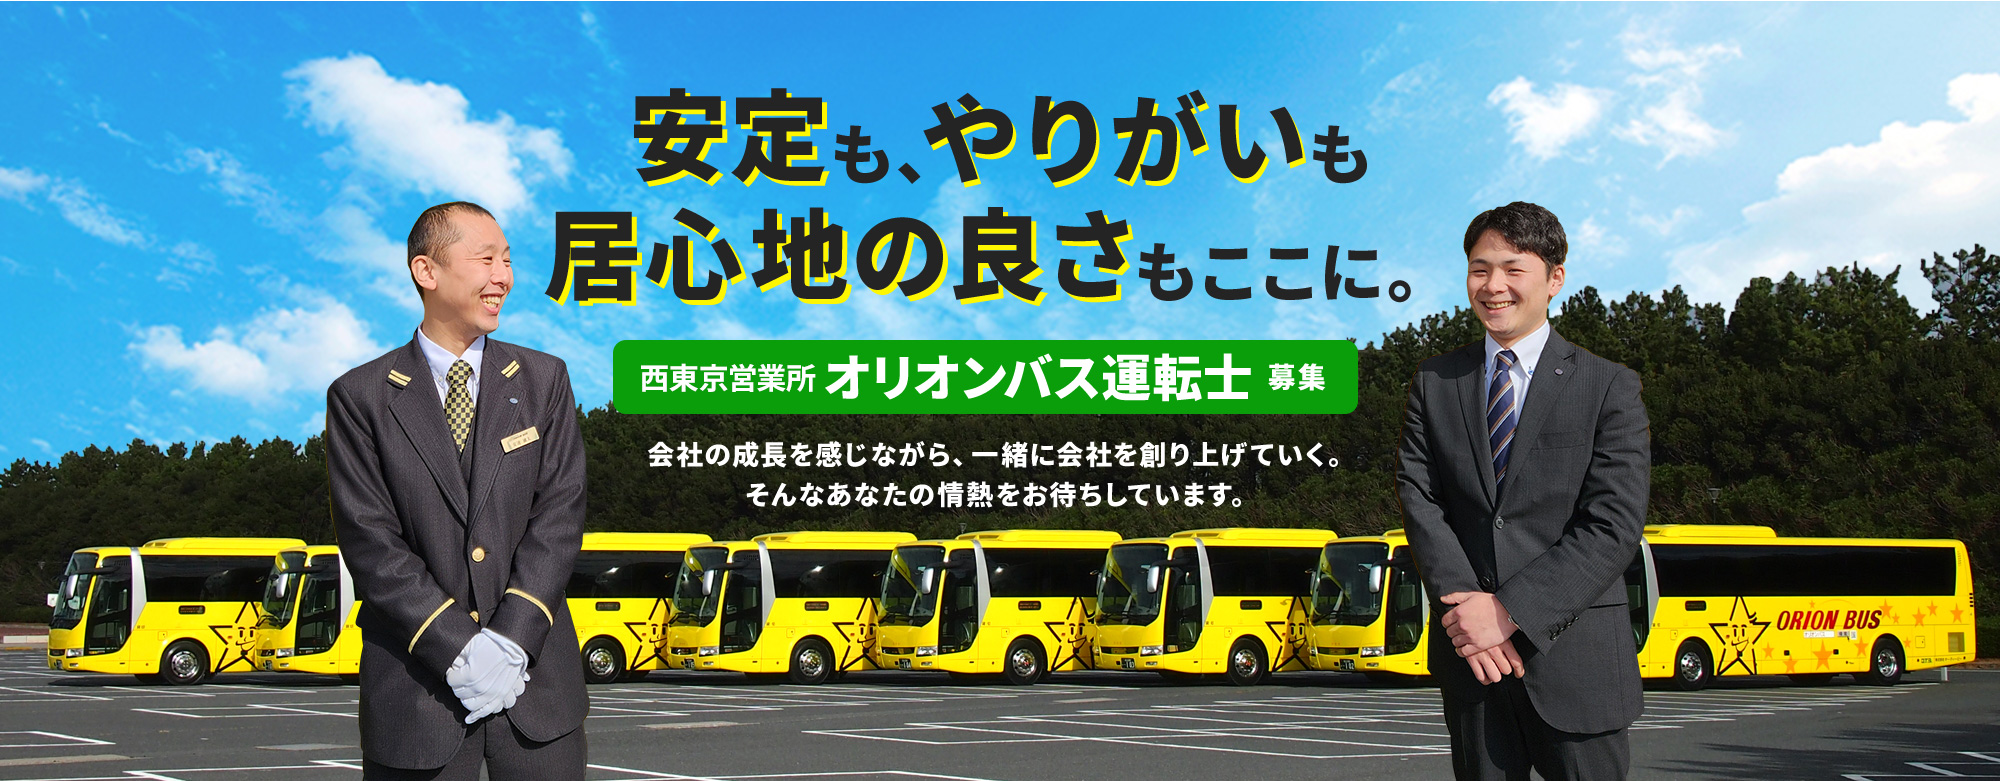 昭島市西東京営業所 オリオンバス運転士募集